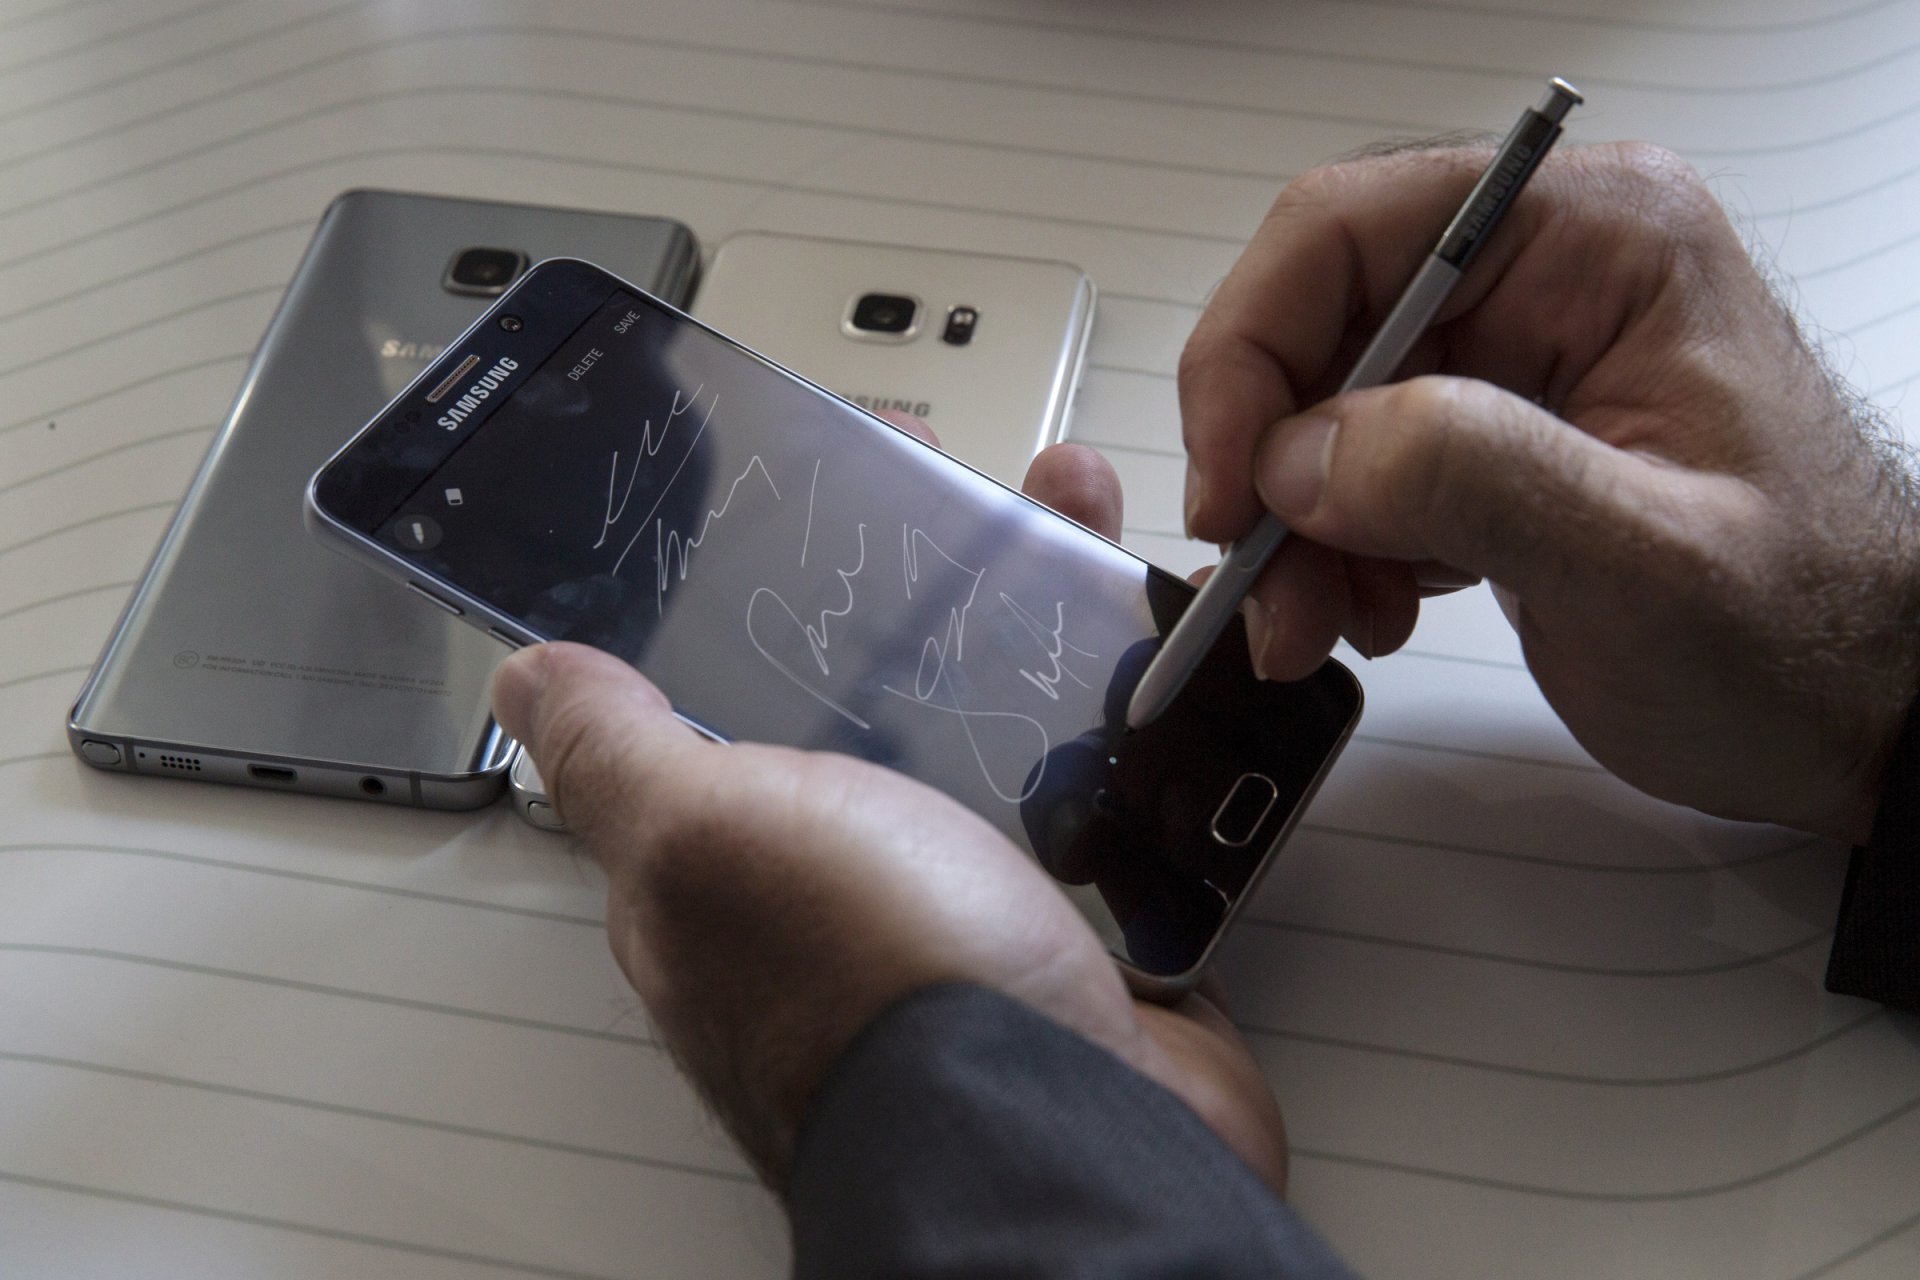 Nuotraukoje pavaizduotas naujasis Samsung Galaxy Note 5